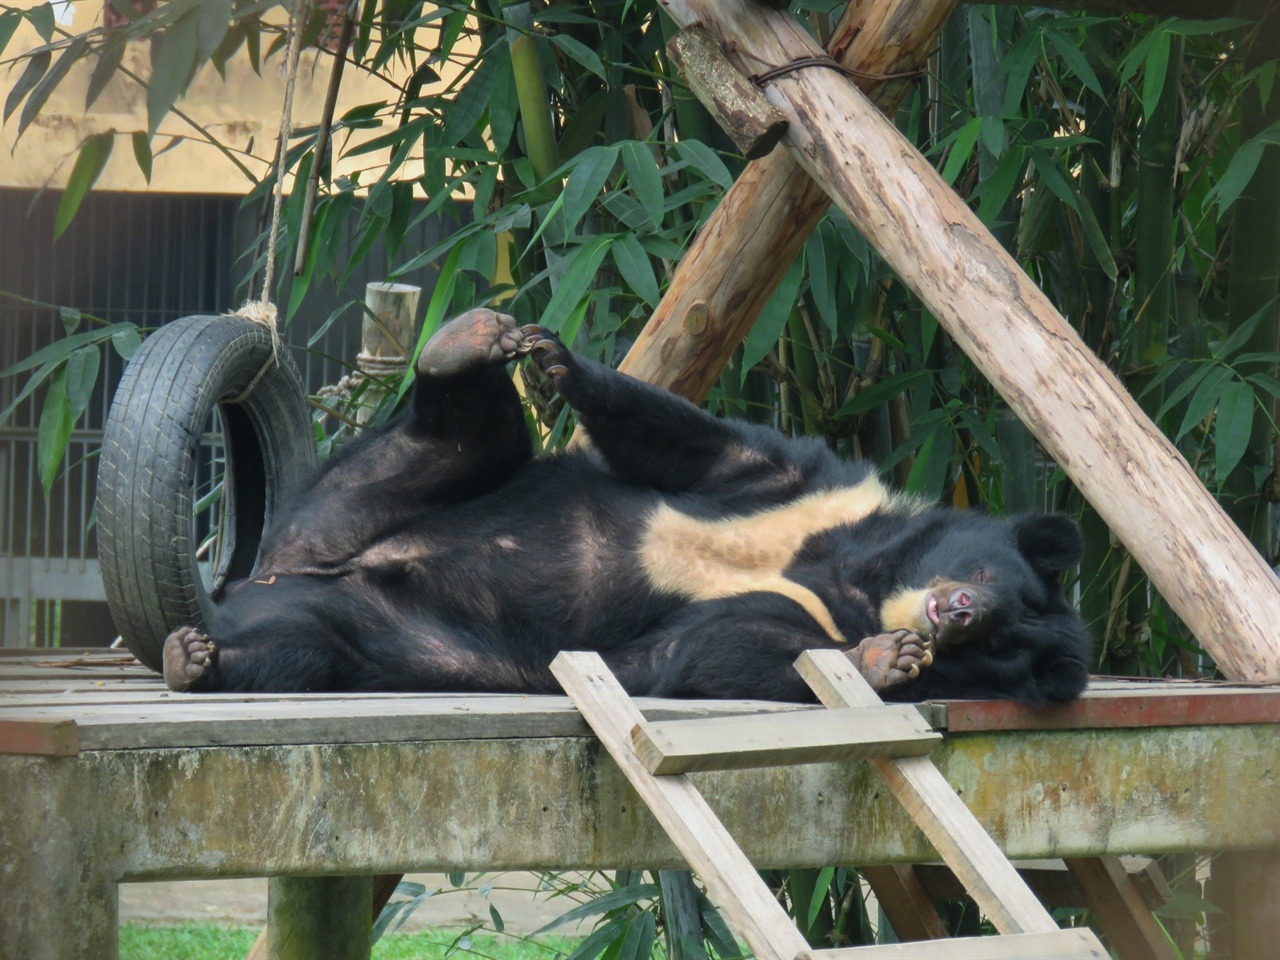  한가로이 낮잠을 즐기는 곰의 모습. 무슨 꿈을 꾸고 있을까.